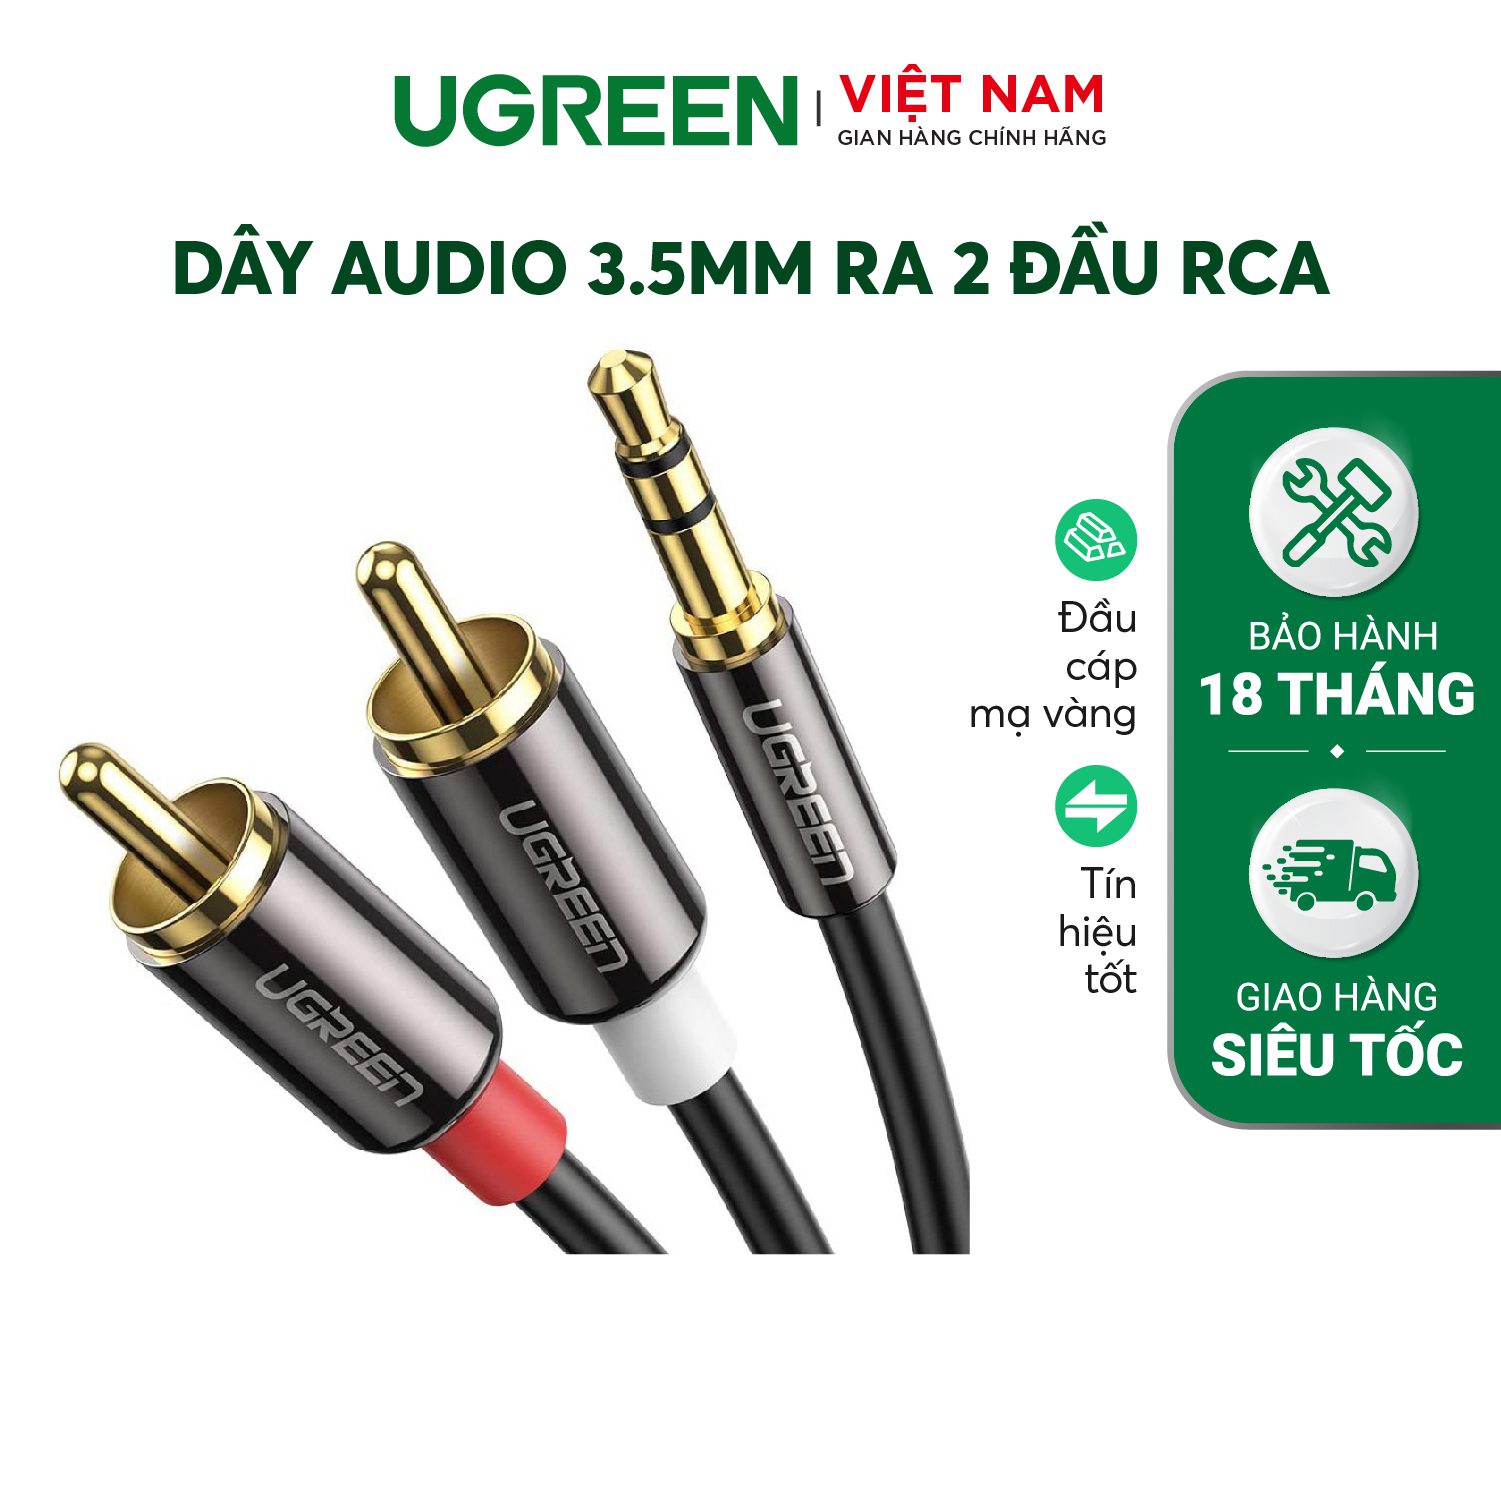 Dây Audio 3.5mm ra 2 đầu RCA (Hoa sen) dài 1M UGREEN AV116 10749 – Ugreen Việt Nam